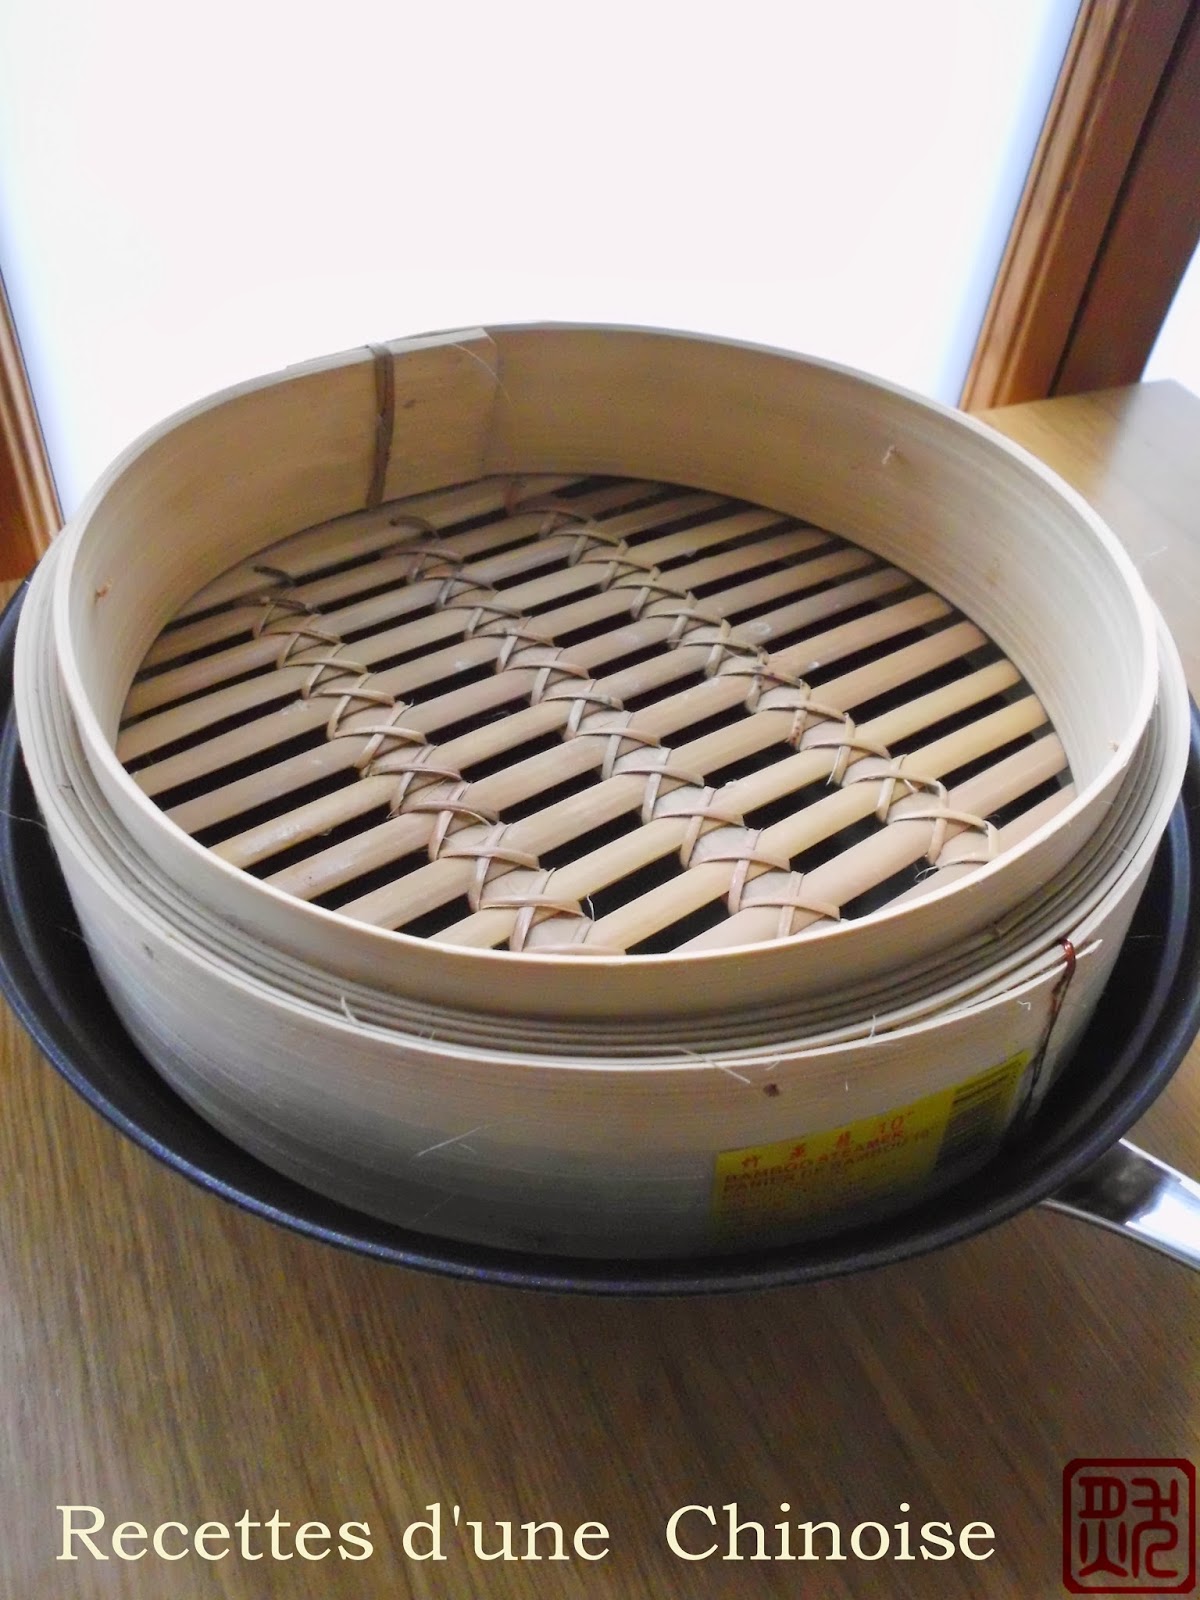 Recettes d'une Chinoise: Panier en bambou pour la cuisson à la vapeur